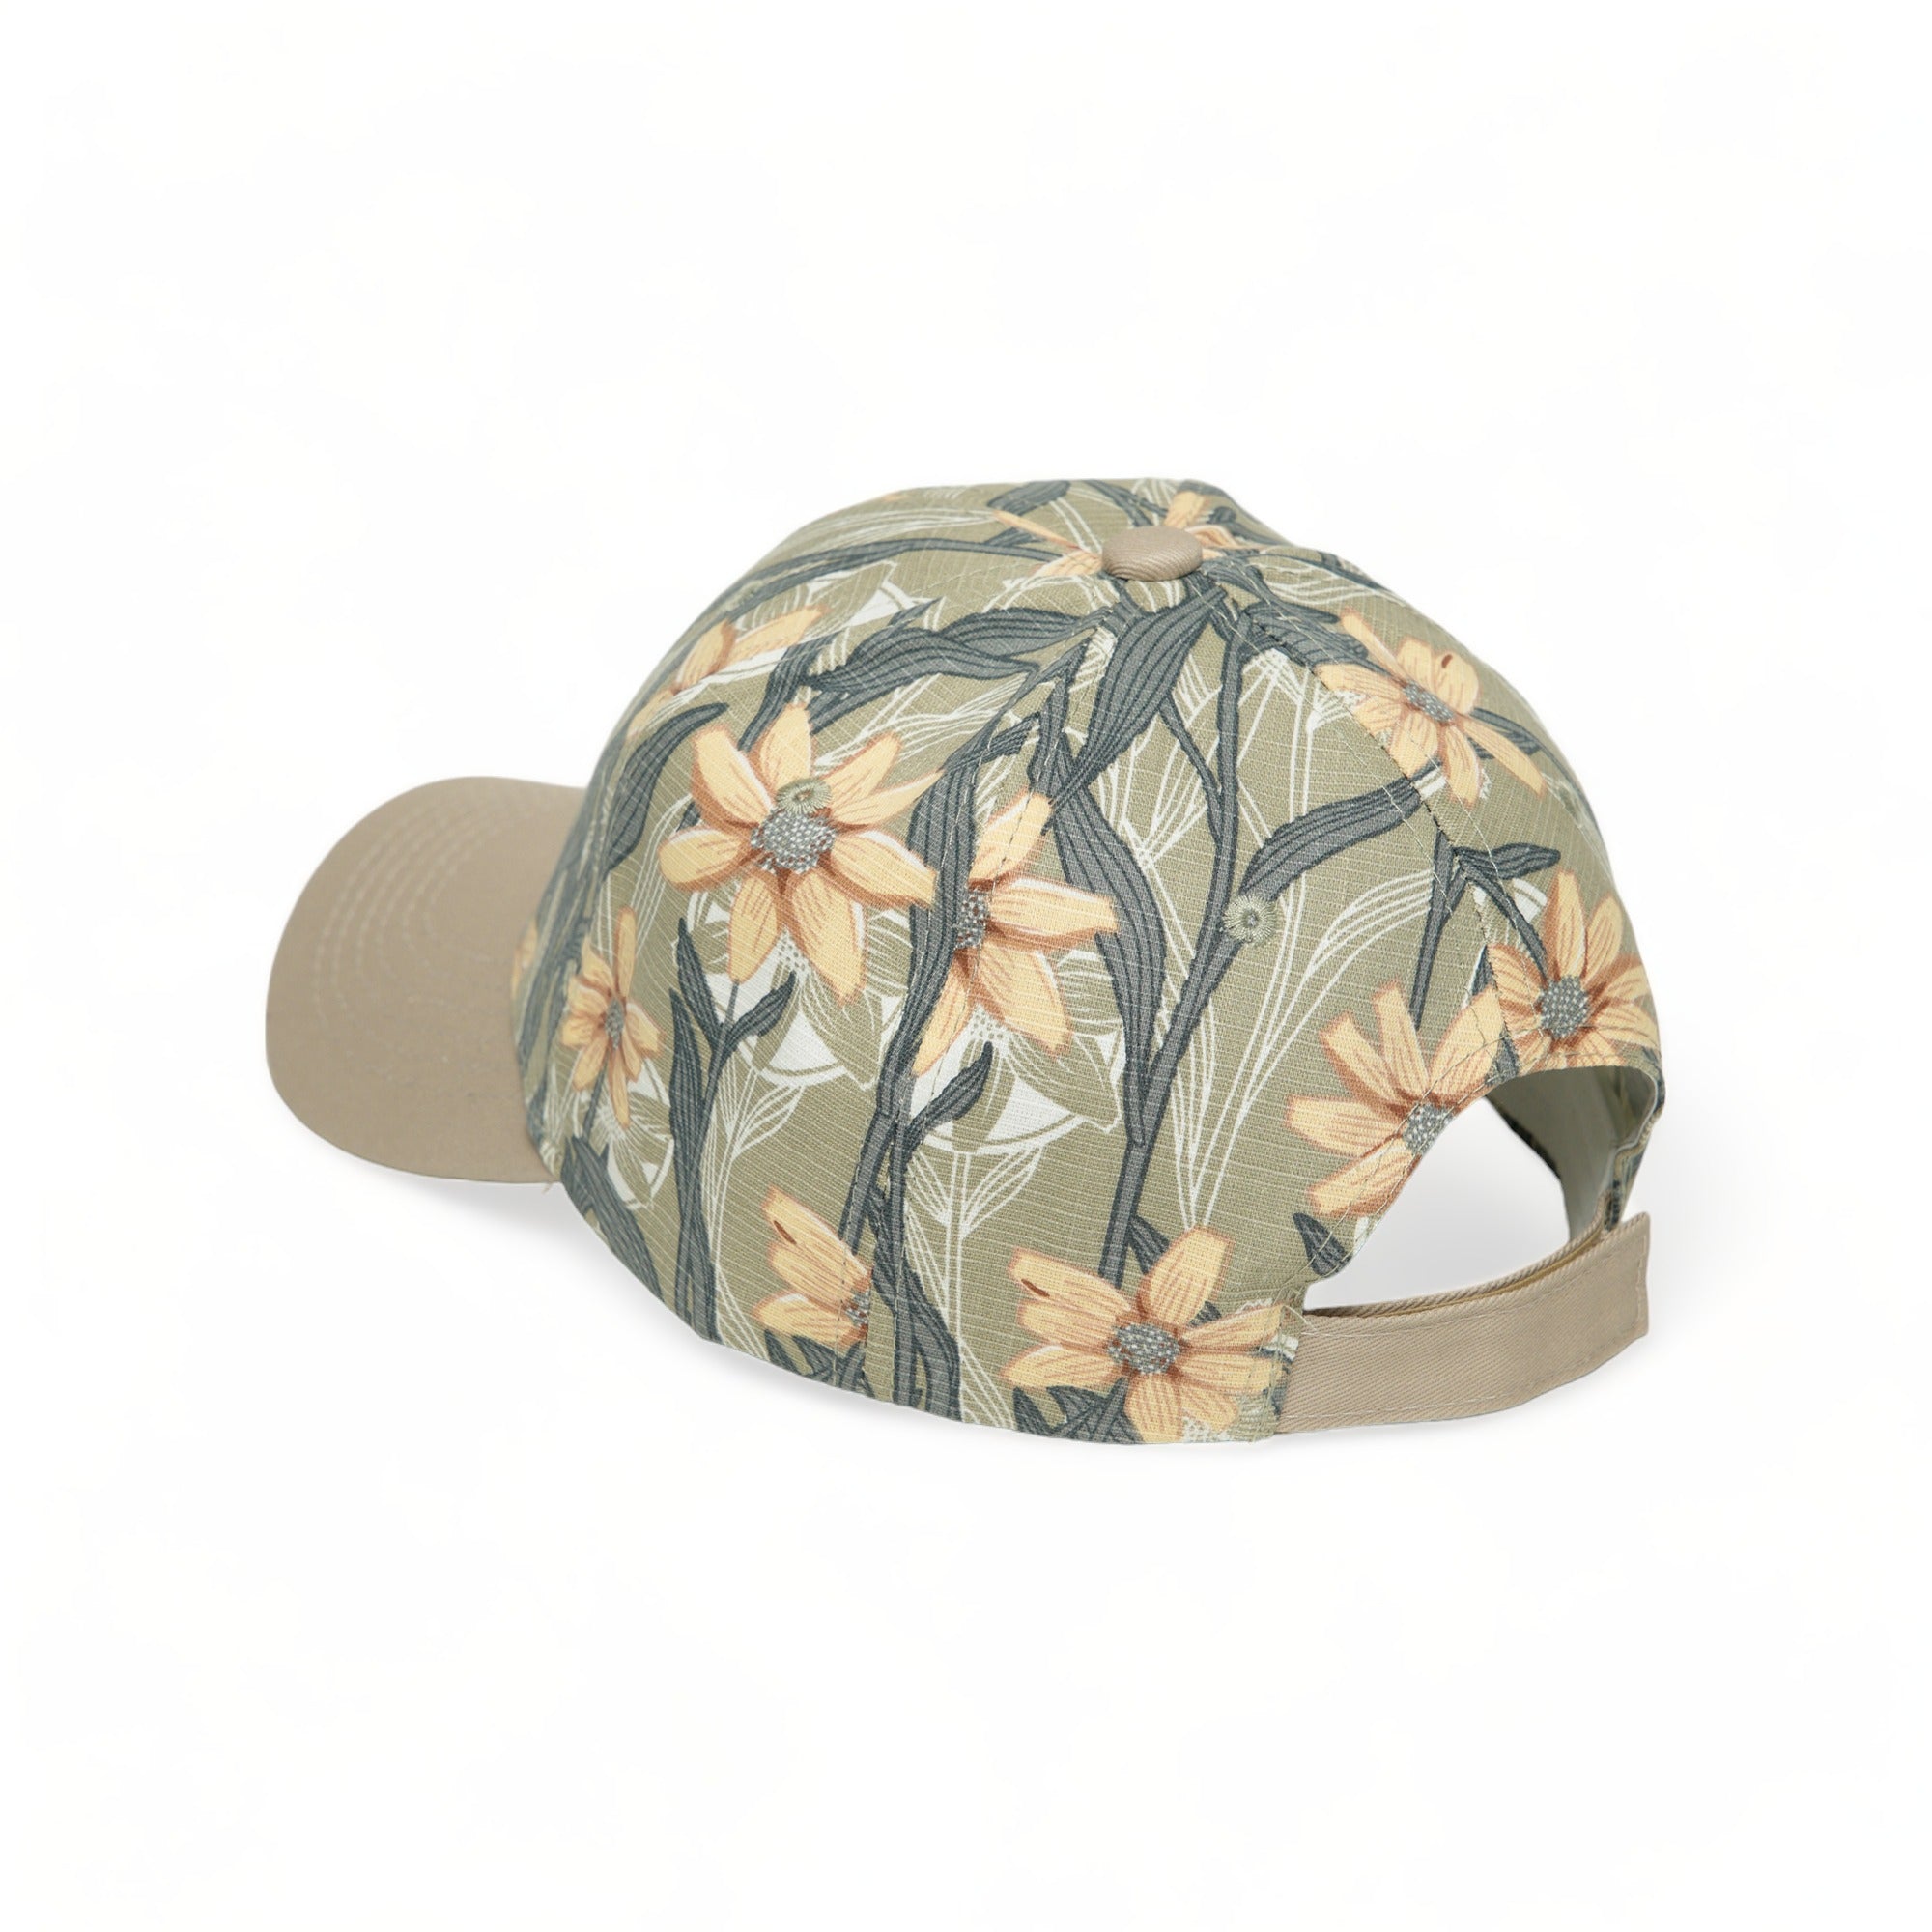 Chokore Tropical Style Leaf Print Baseball Cap (Olive Green)